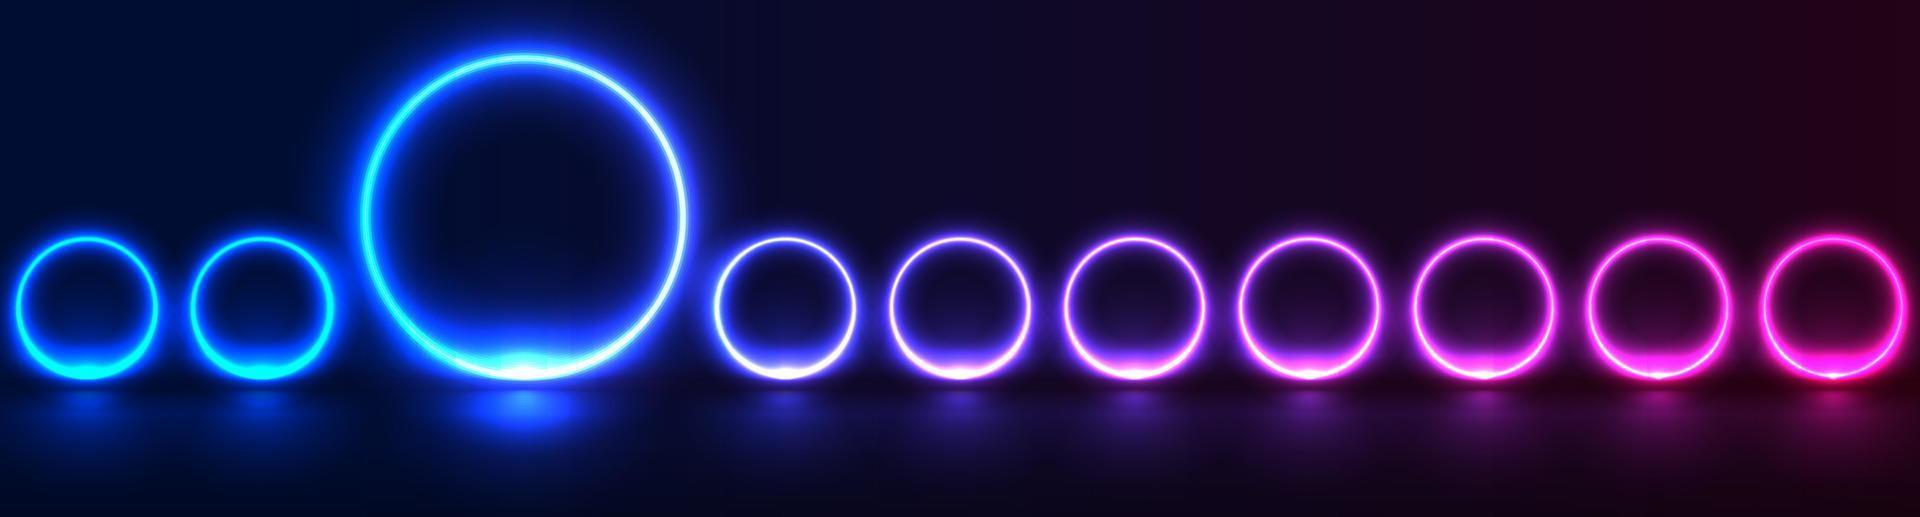 Konzept abstrakt Sci-Fi Banner mit Blau lila glühend Neon- Kreise vektor